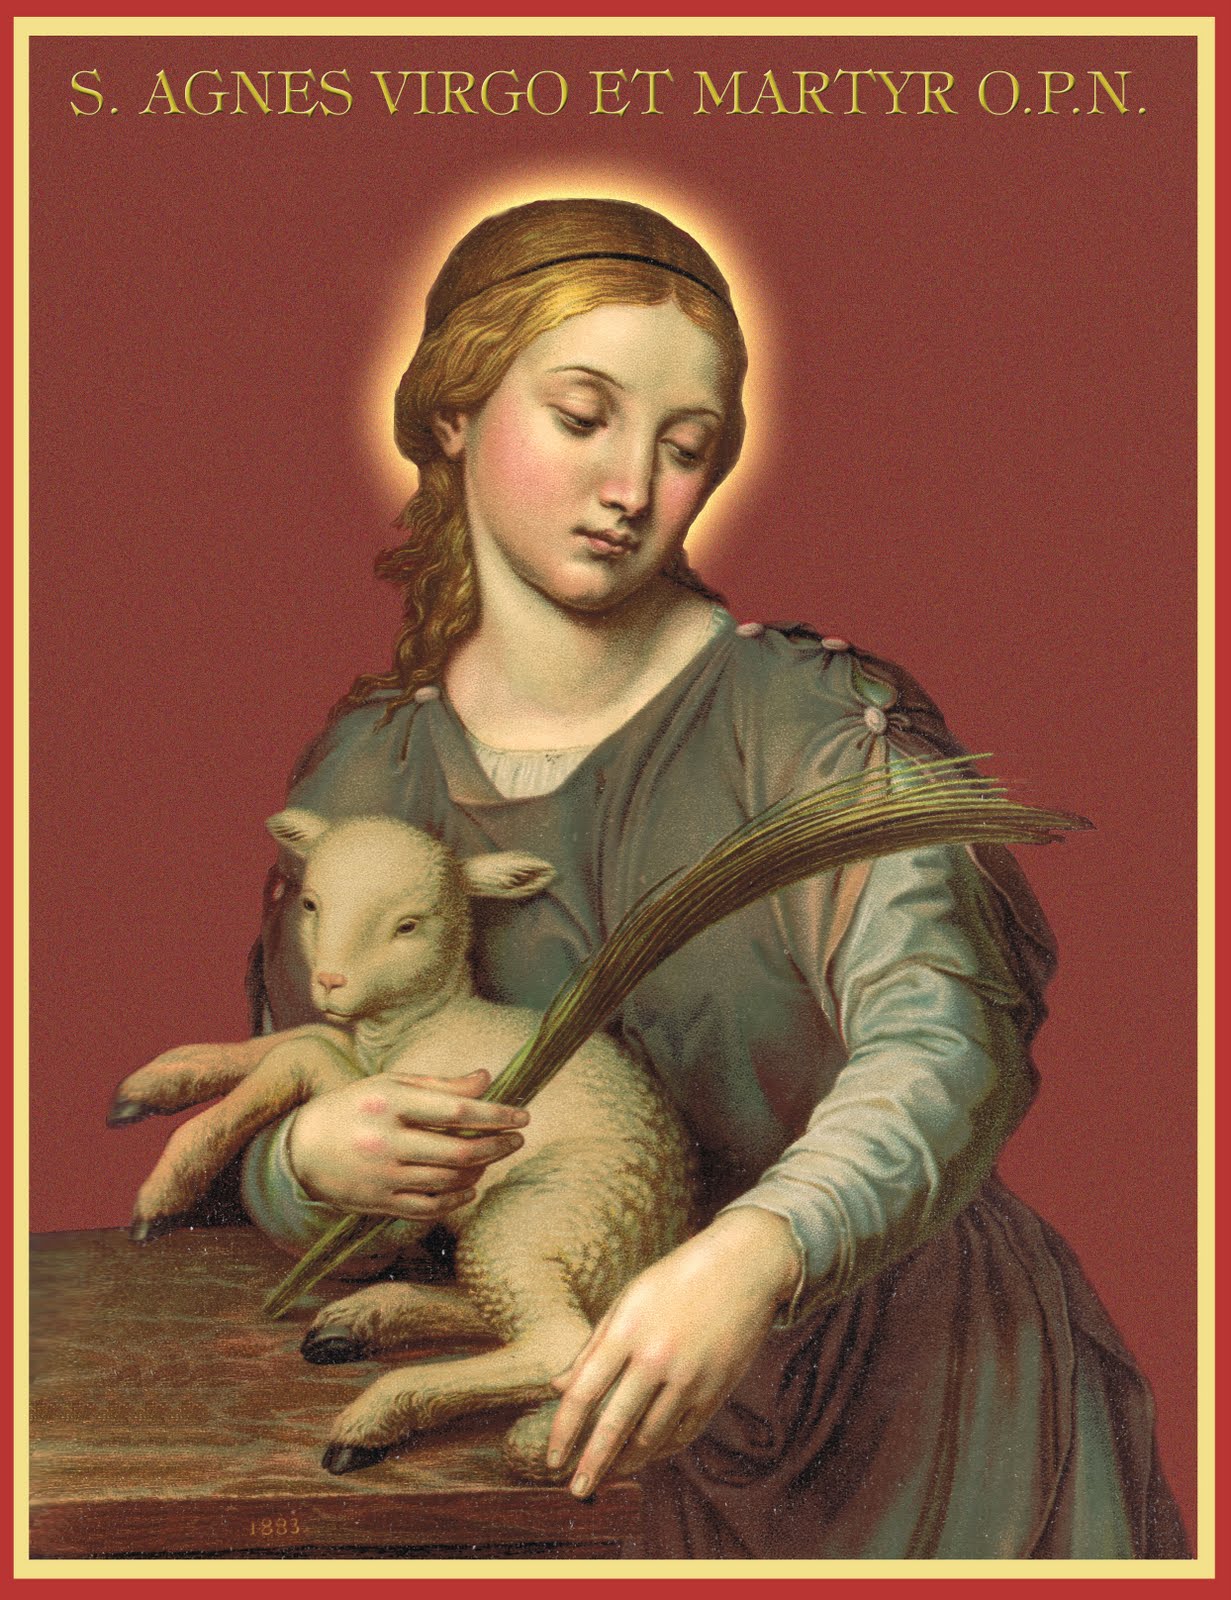 Sant'Agnese, vergine e martire dans images sacrée st-agnes-virgin-martyr